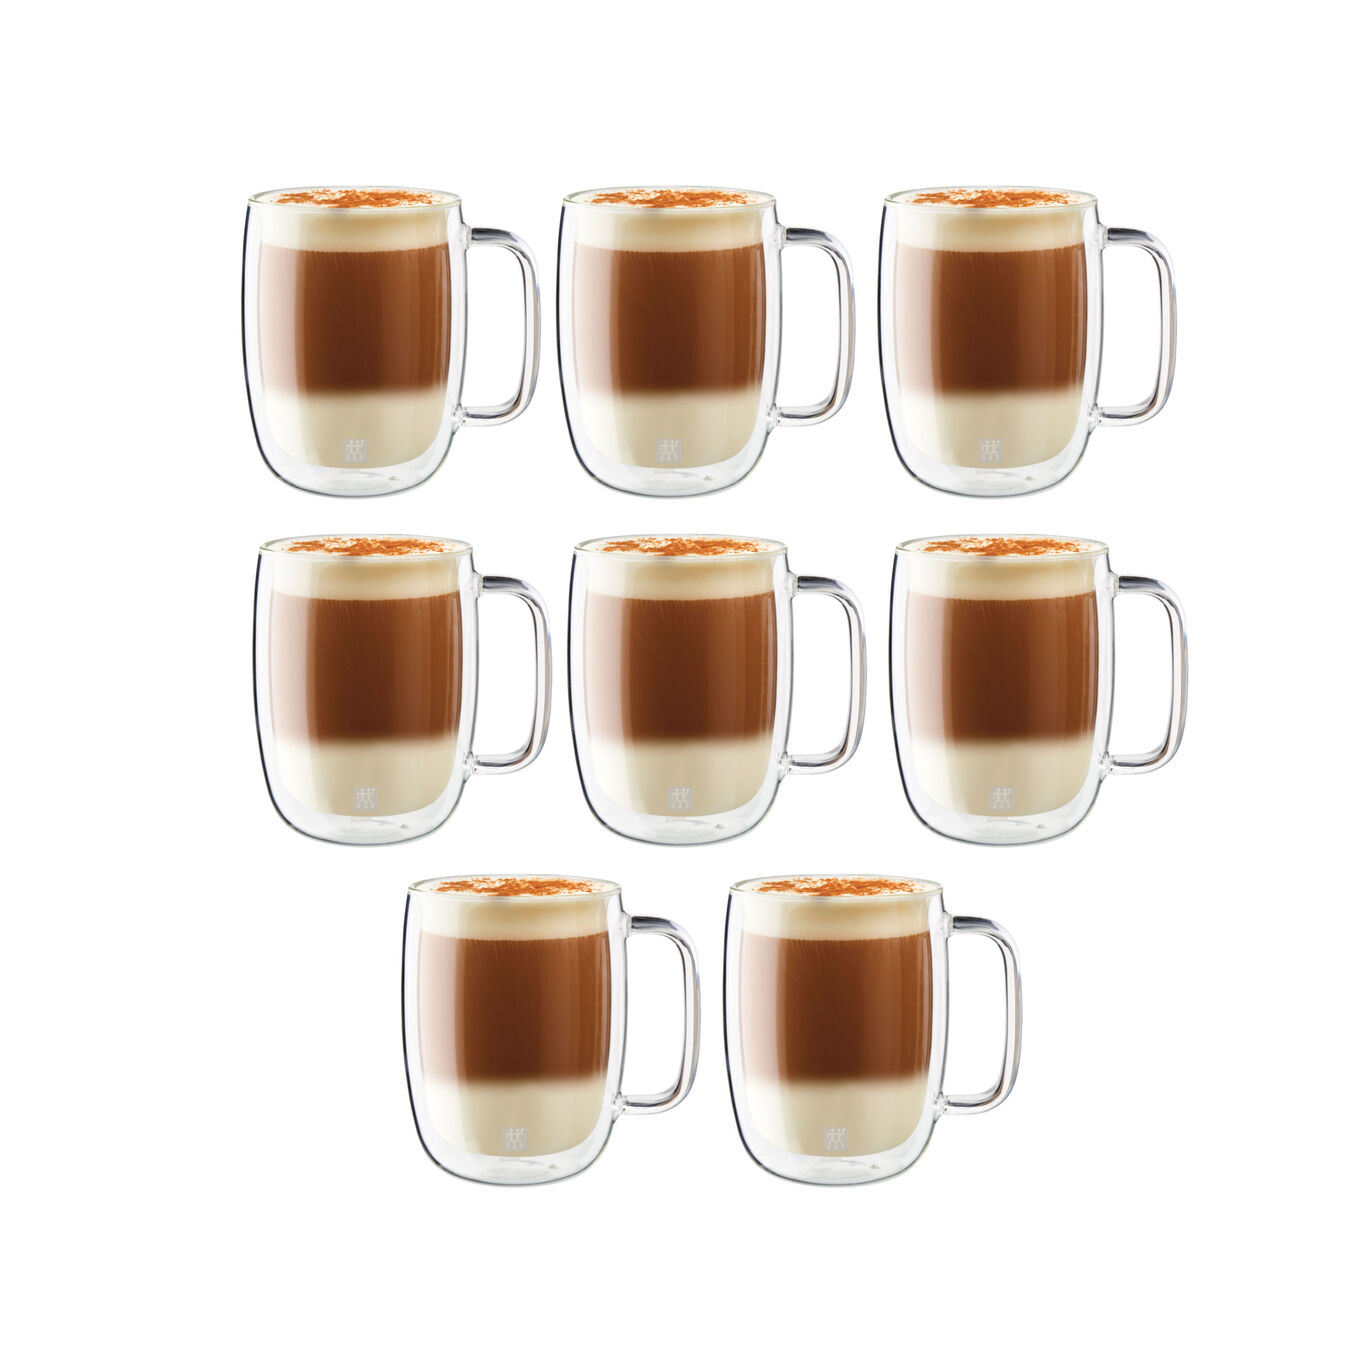 8 Piece Latte Mug Set - Value Pack,,large 2